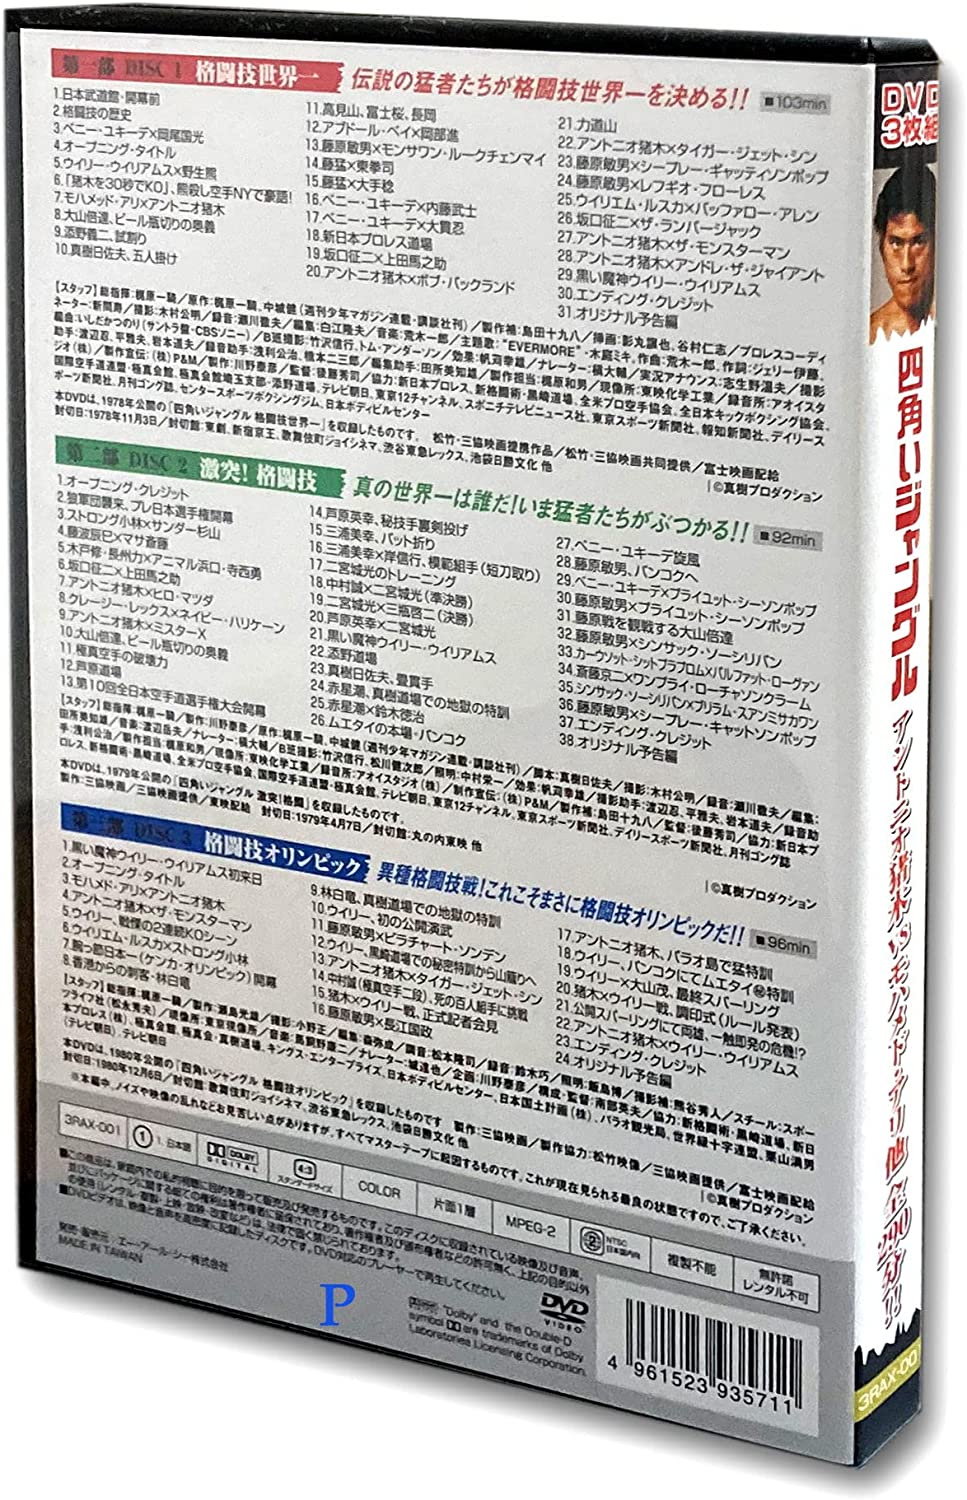 アントニオ猪木  異種格闘技 DVD 4本セット  ウィリー・ウィリアムス